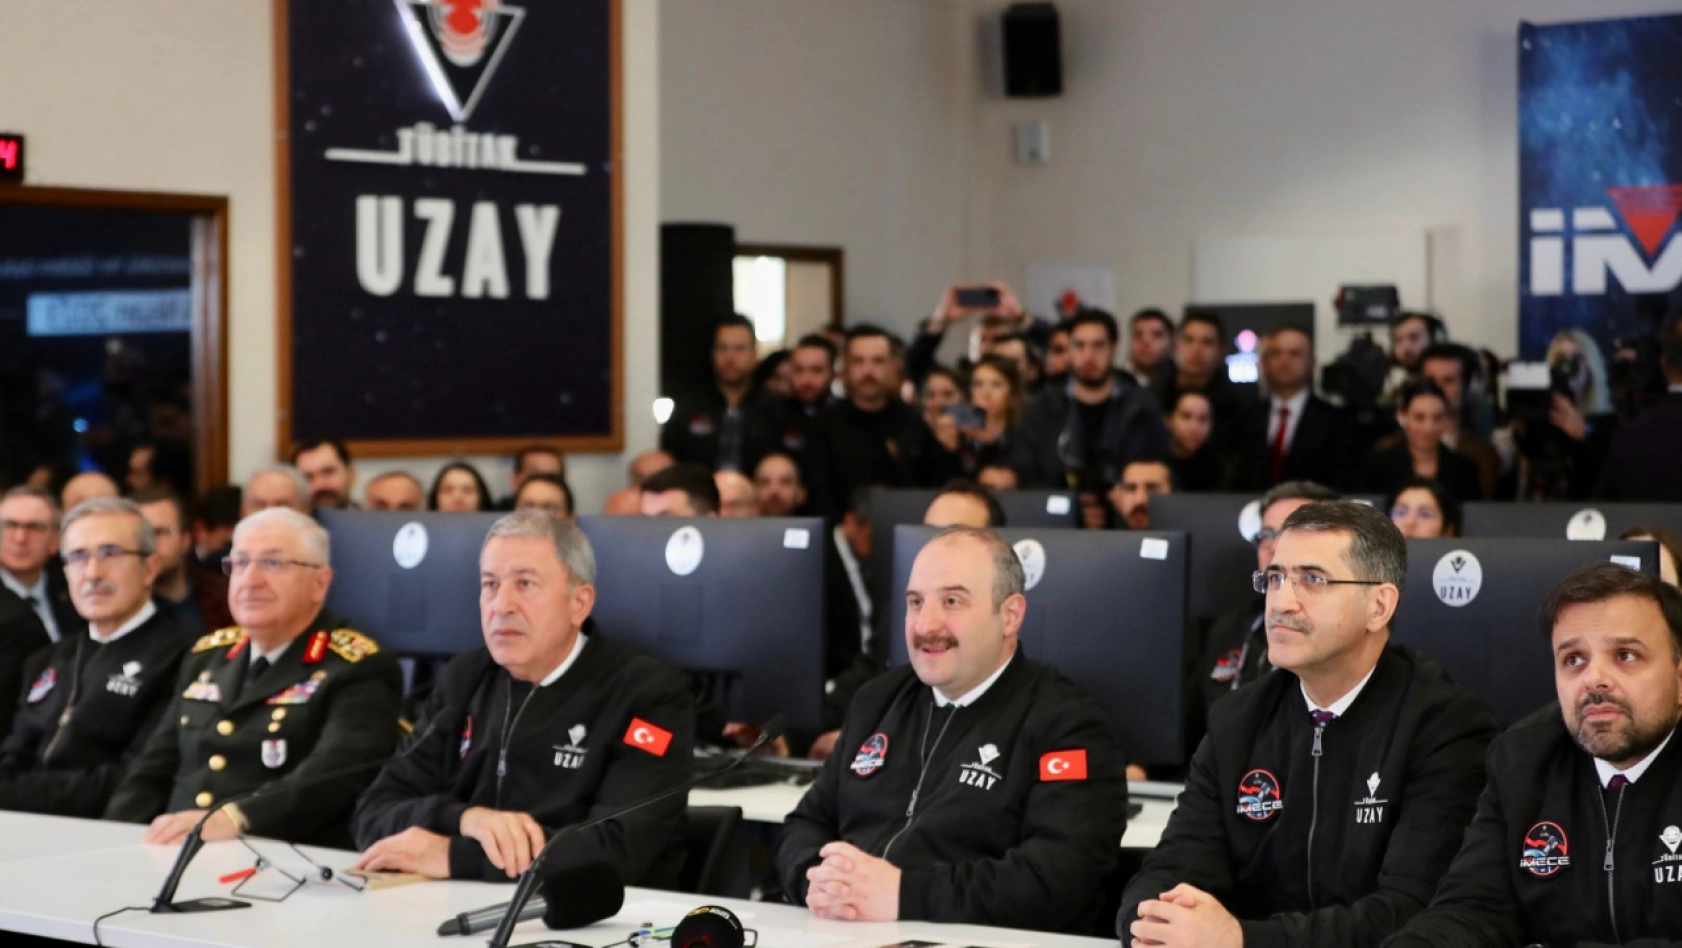 İMECE, Türkiye'nin ilk yerli gözlem uydusu olarak uzaya gönderildi